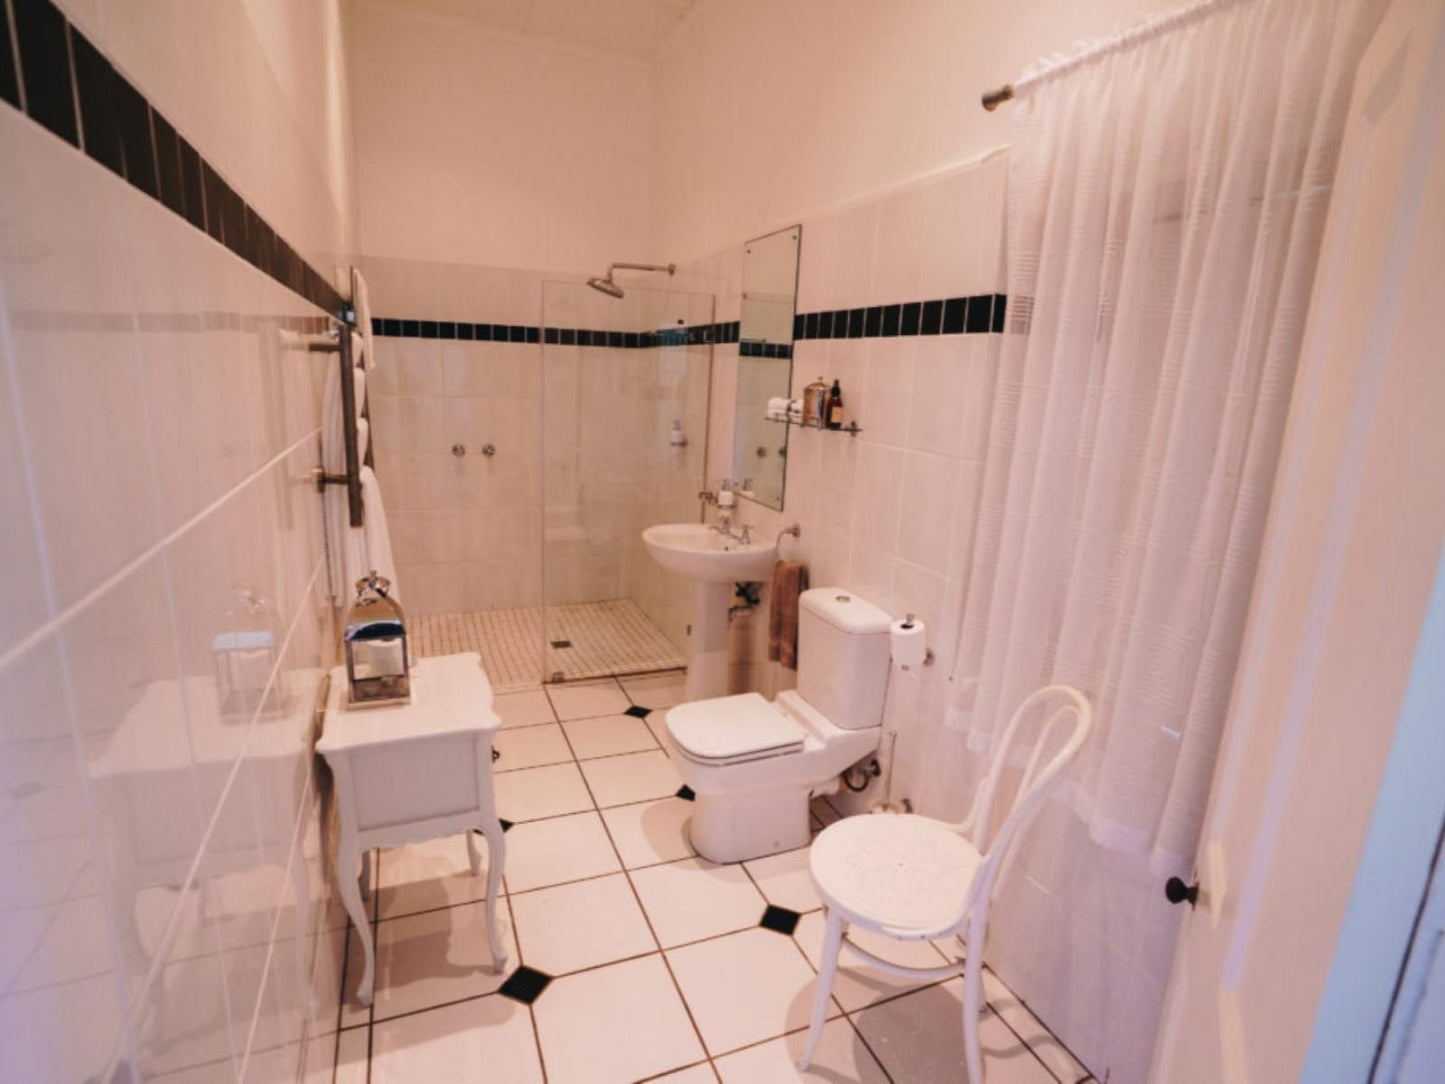 Kloovenburg Pastorie Riebeek Kasteel Western Cape South Africa Bathroom